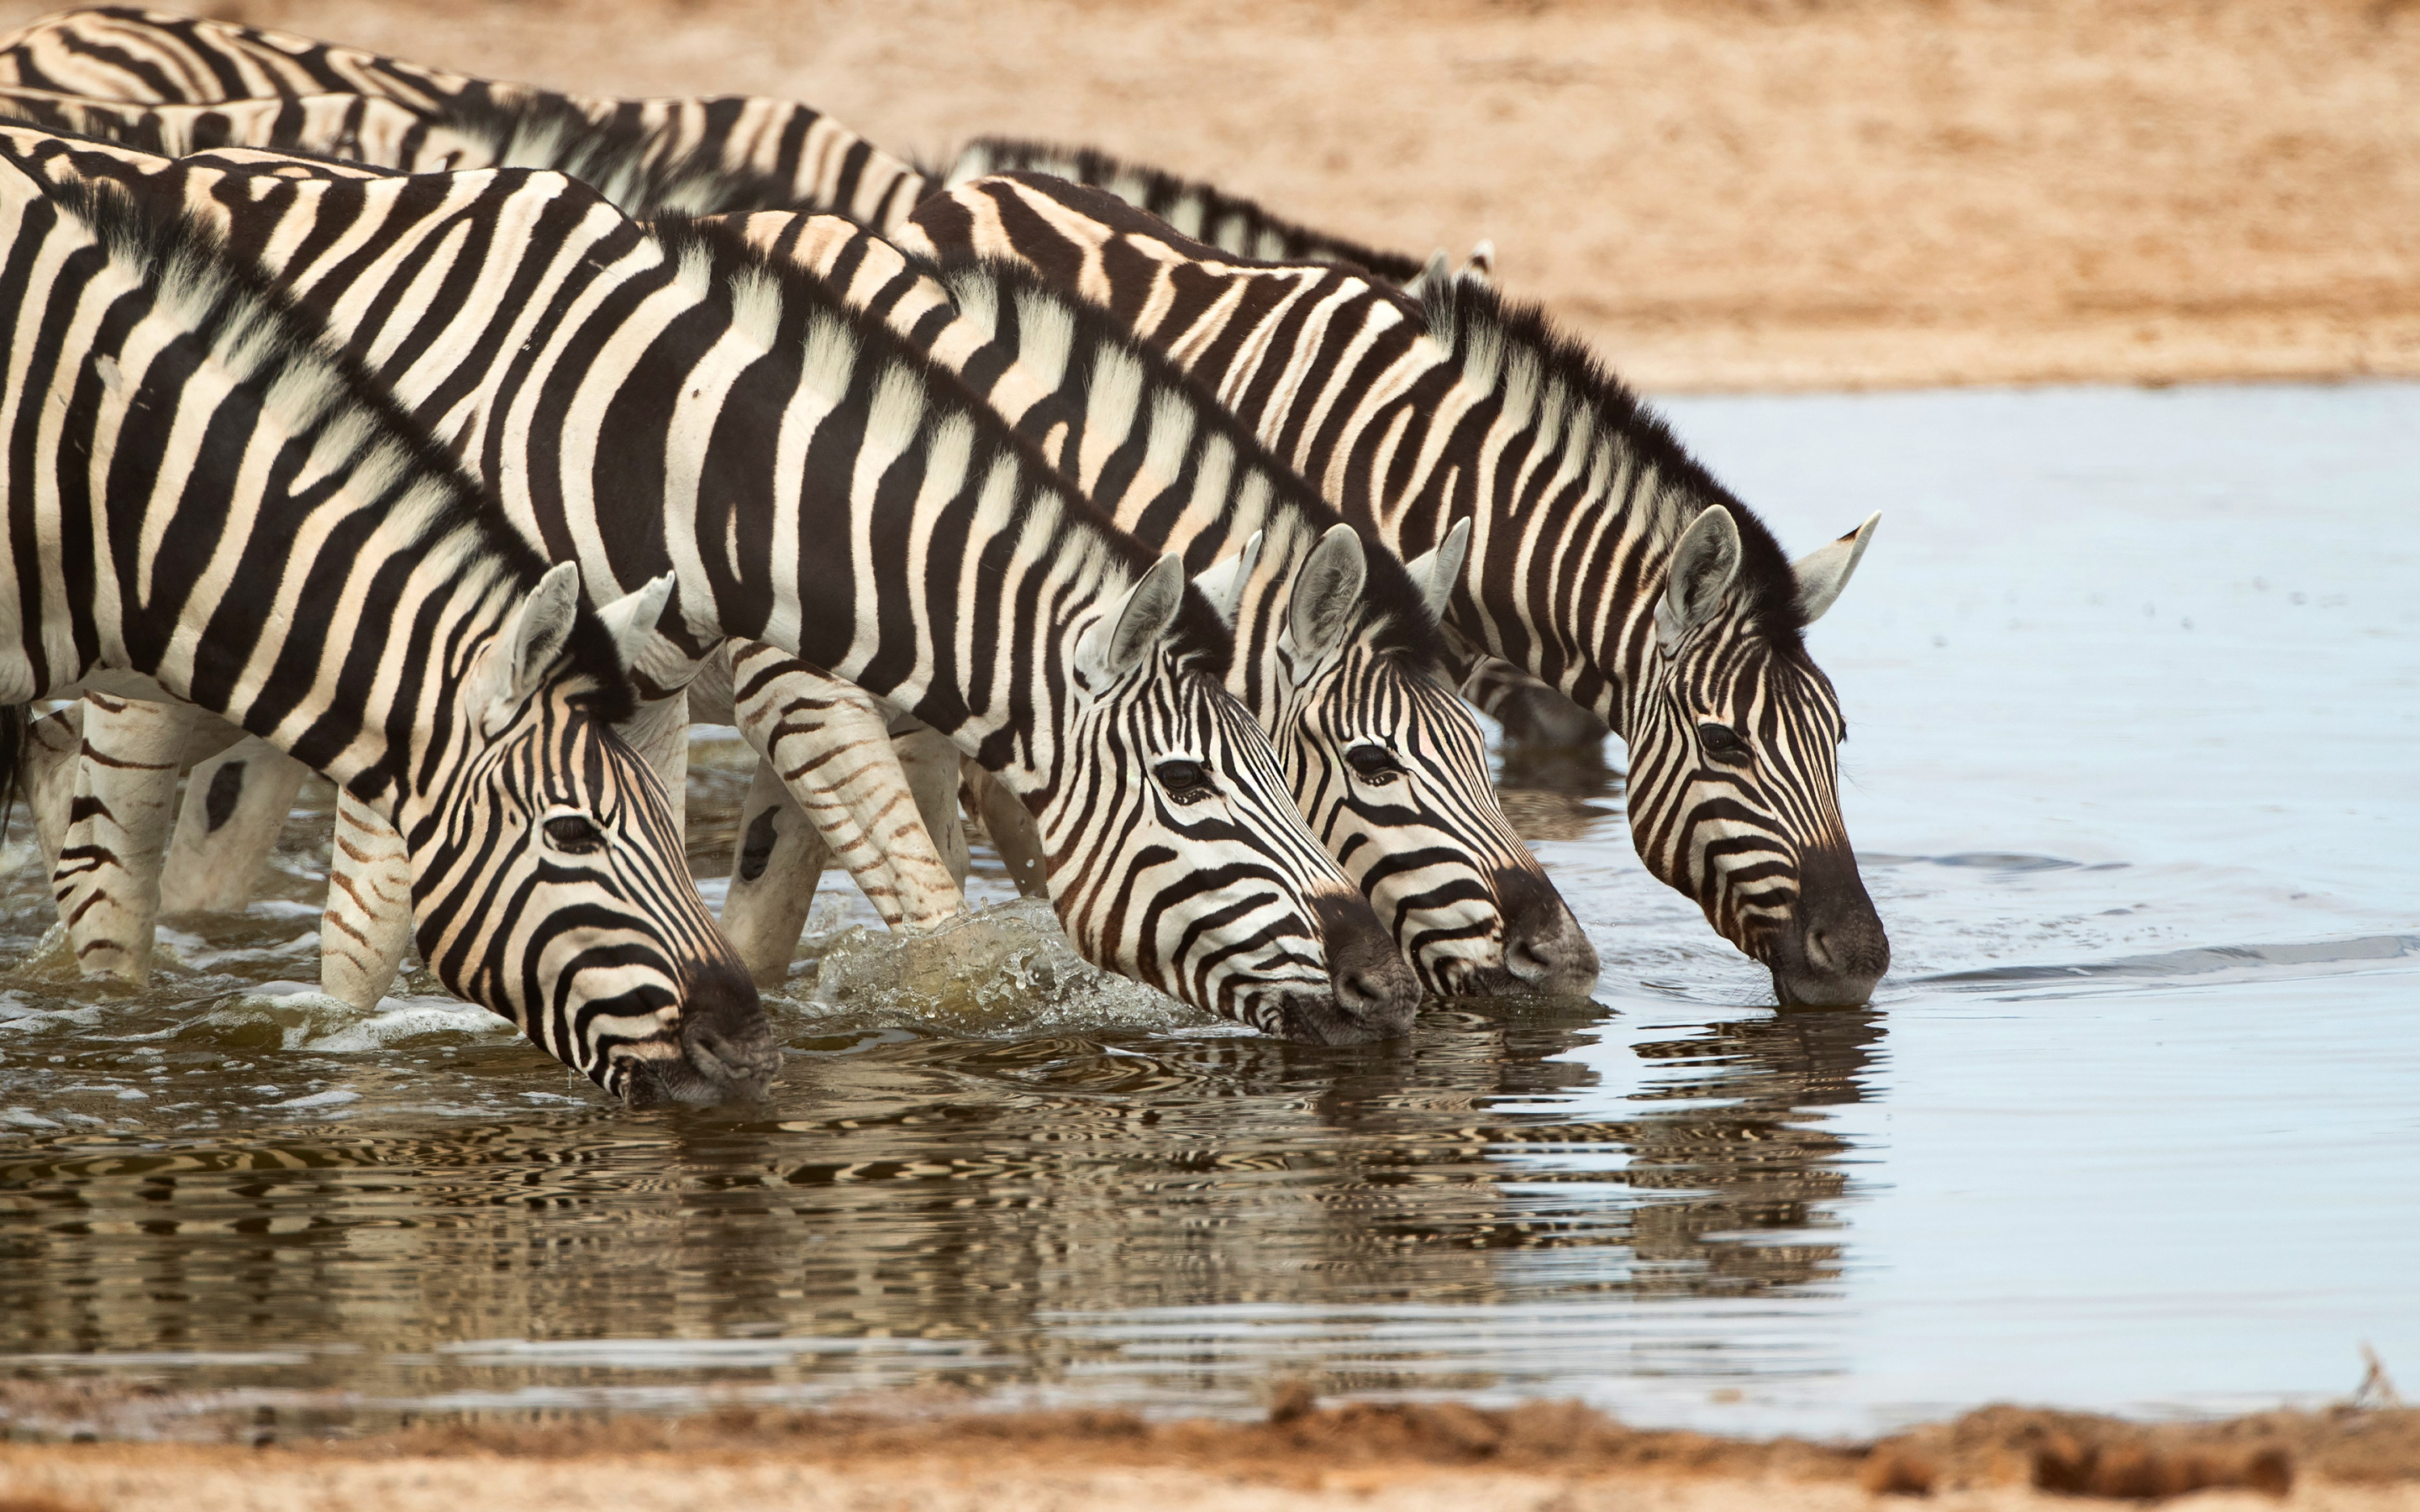 ダウンロード画像 シマウマ 湖 夜 夕日 野生動物 シマウマ飲料水 タンザニア アフリカ 画面の解像度 x1800 壁紙デスクトップ上